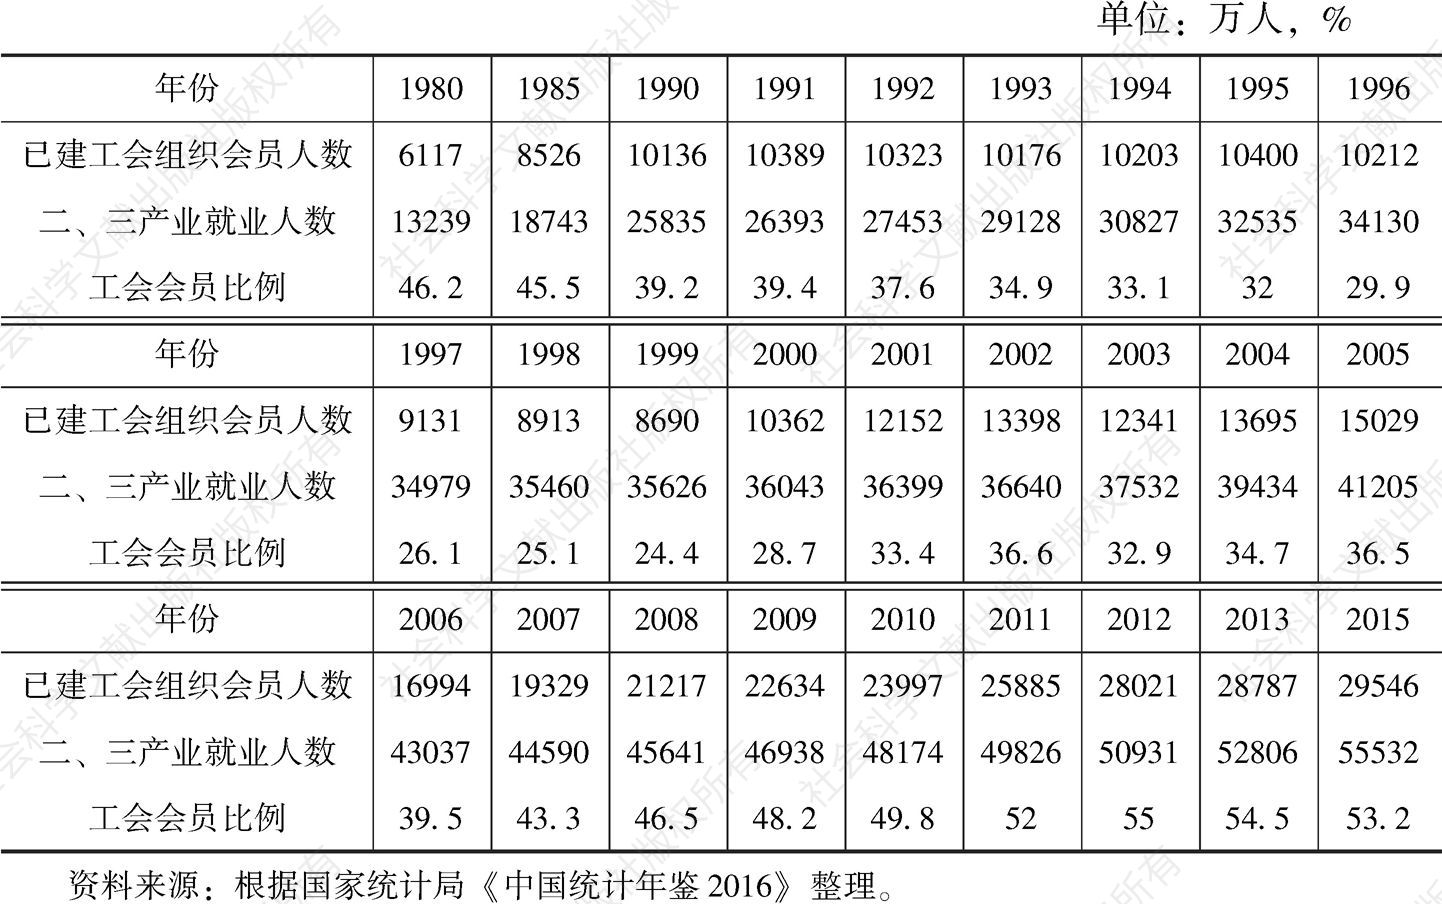 附表2 中国二、三产业就业人数与已建工会组织会员比例